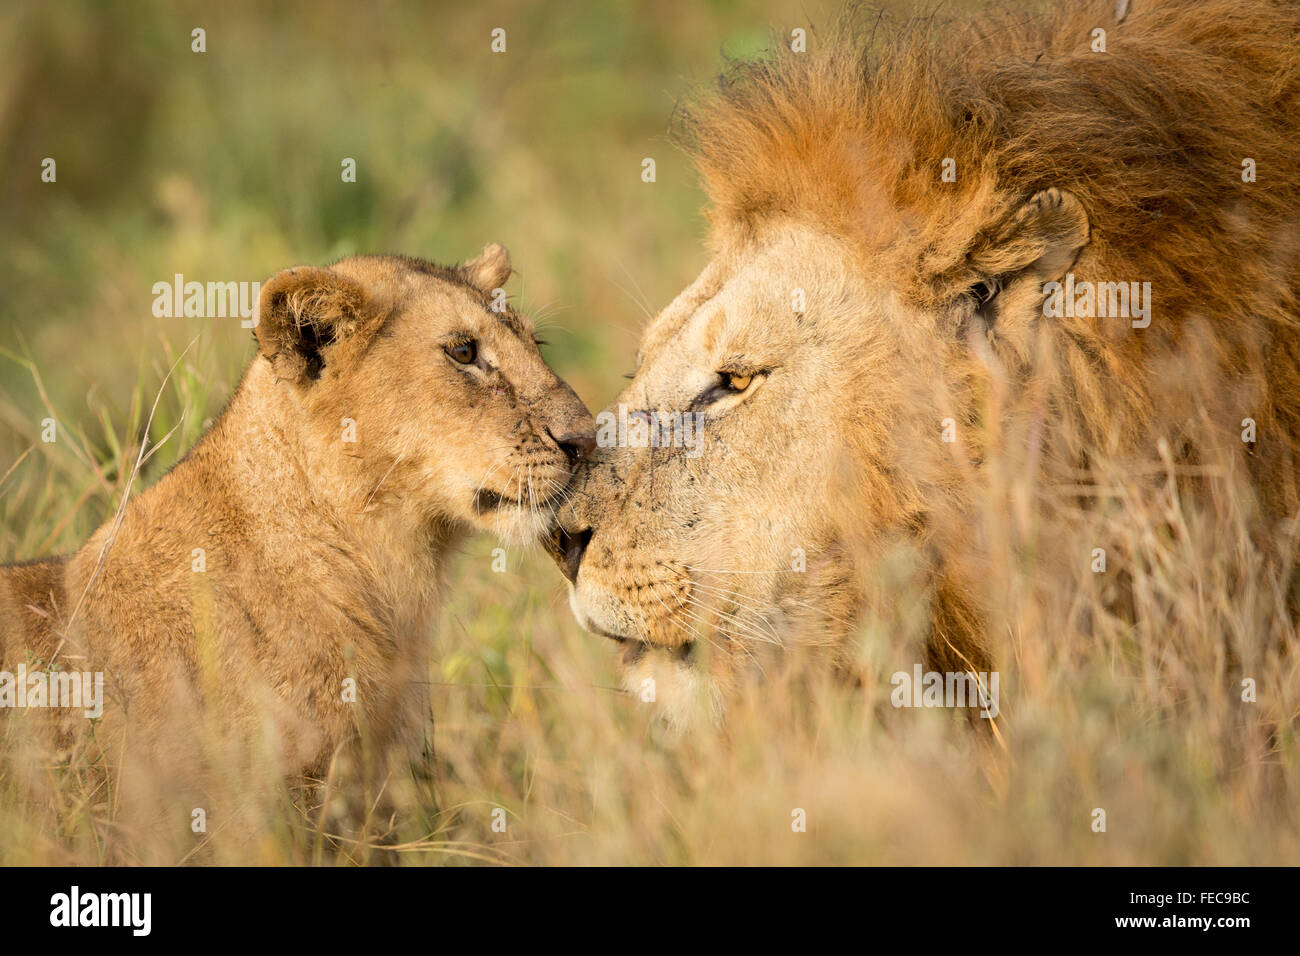 African Lion mâle adulte et jeune cub dans le Parc National de Serengeti en Tanzanie Banque D'Images